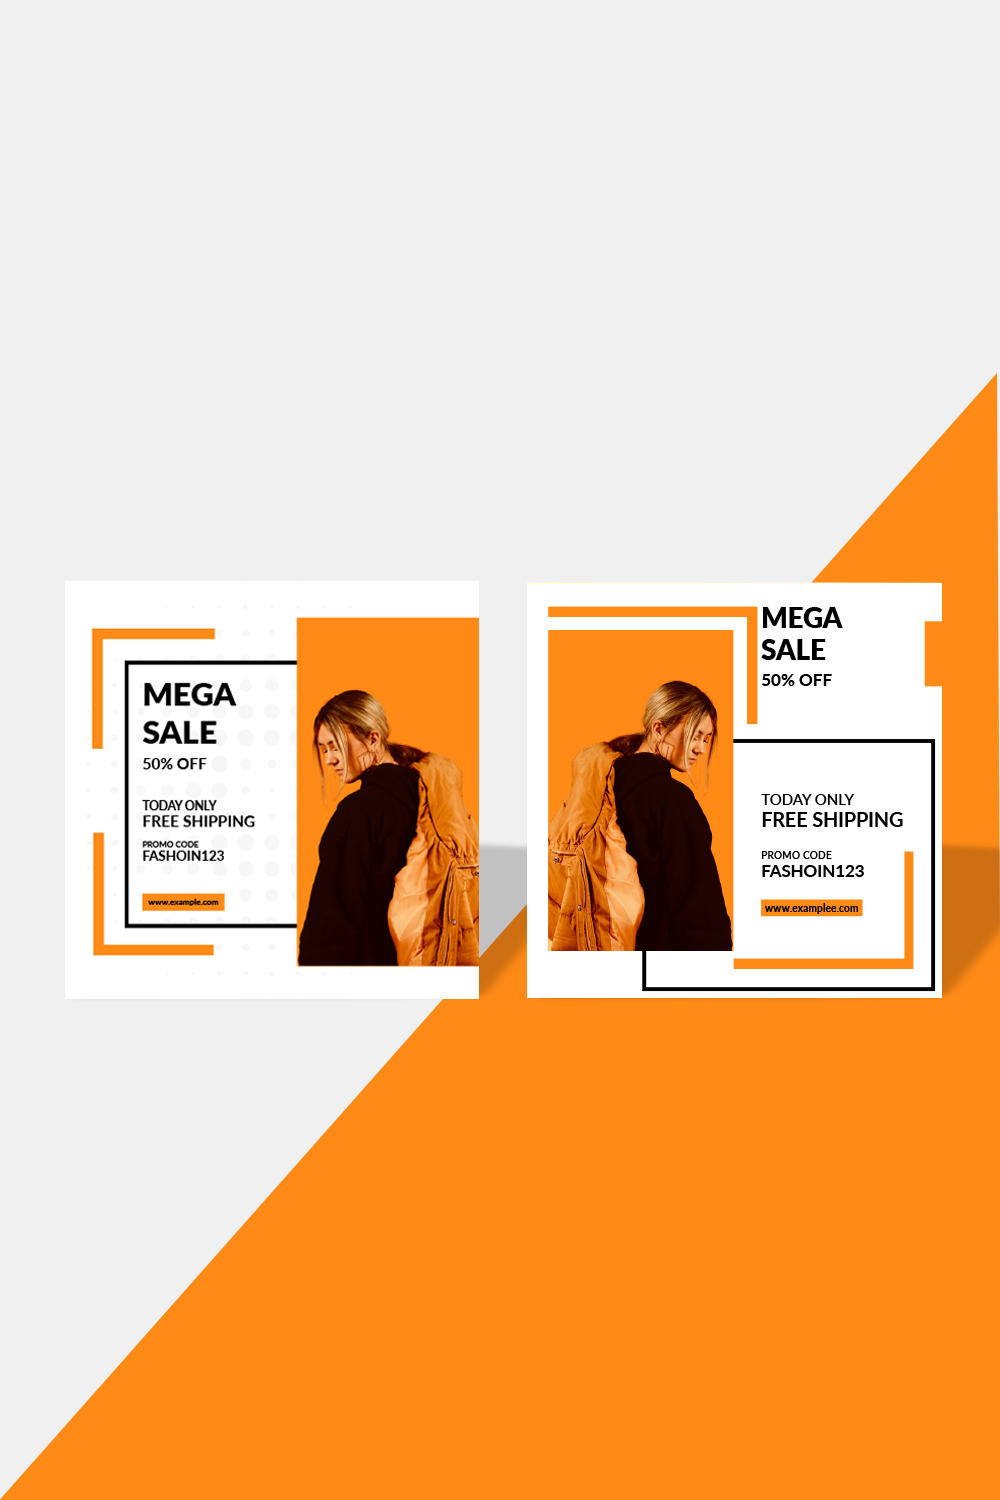 2 Bundles Special offer mega sale & fashion banner background template design vector illustration pinterest preview image.